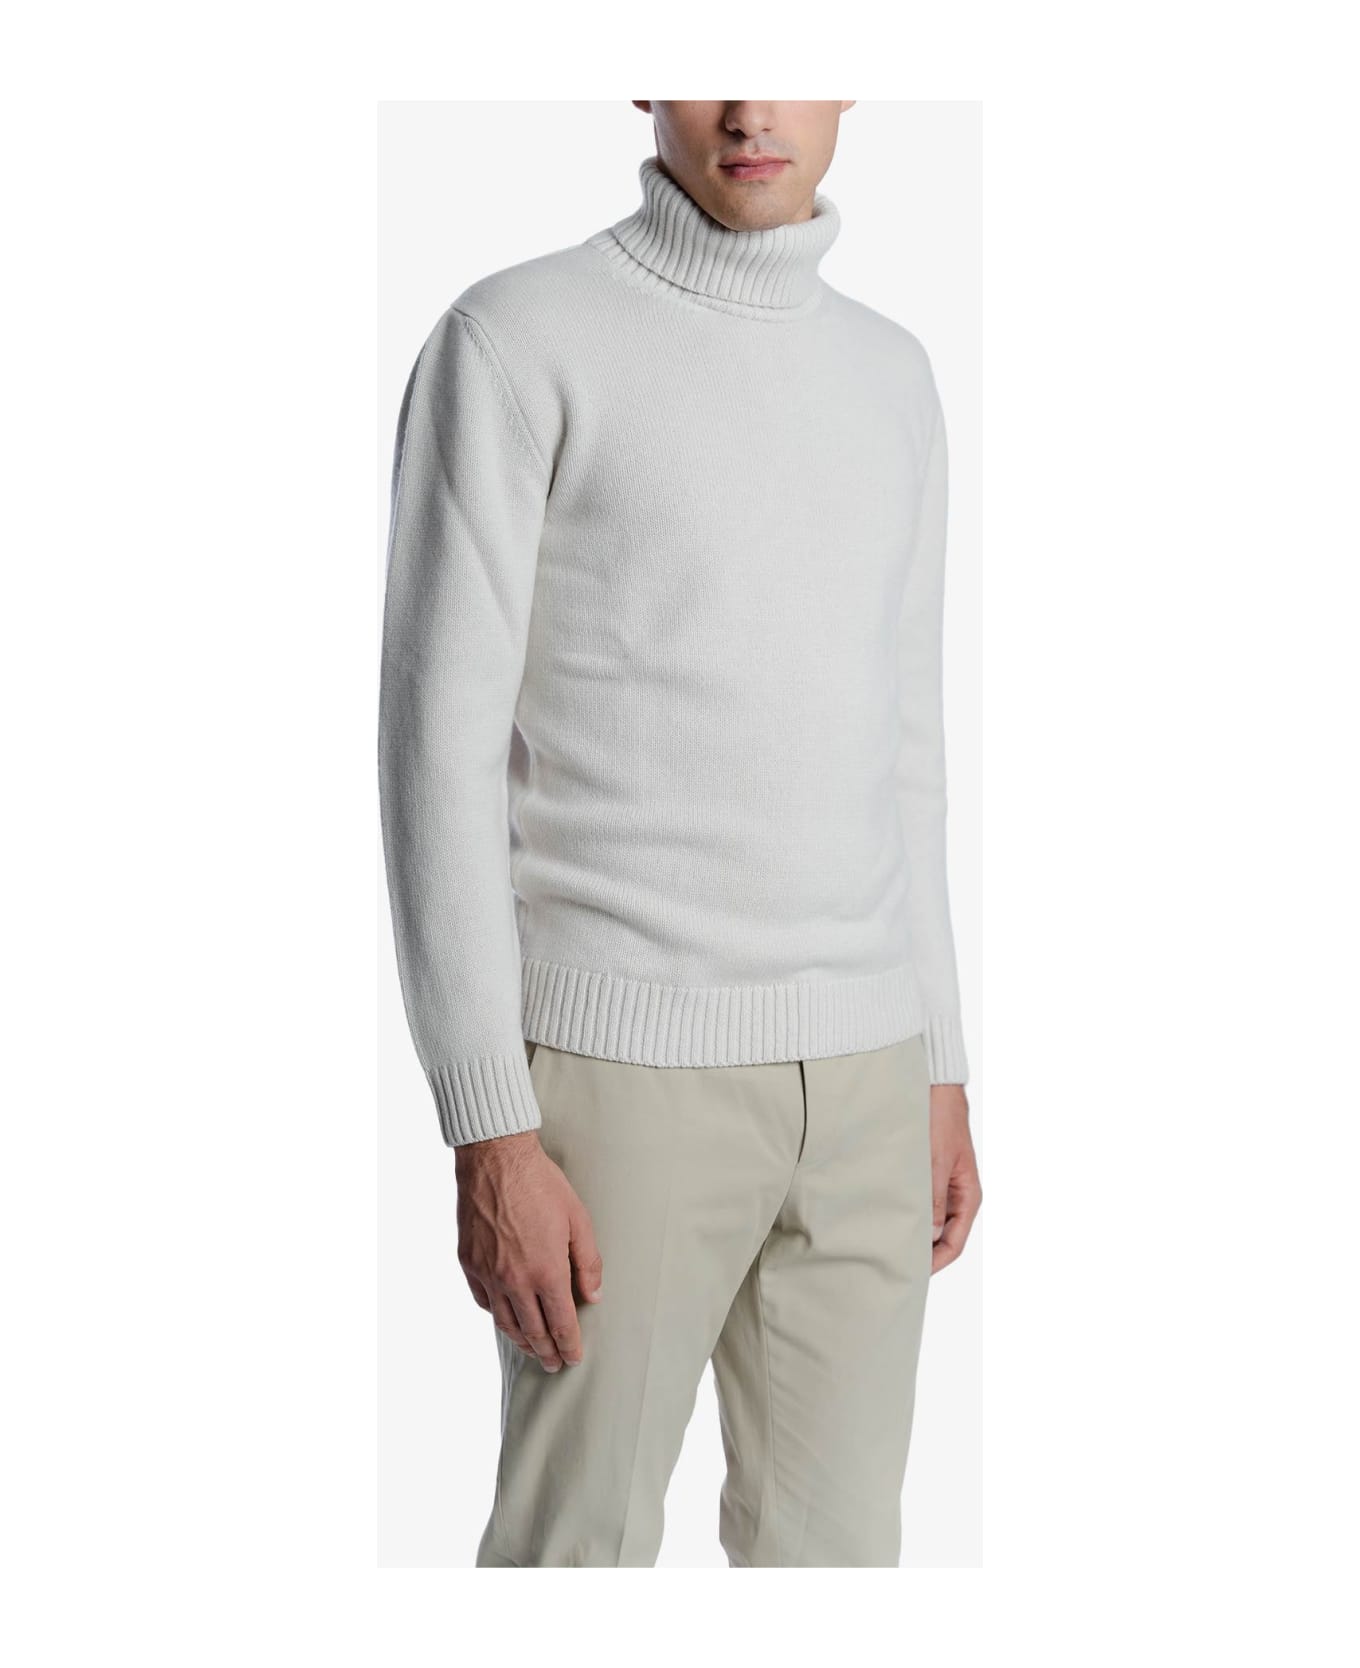 Larusmiani Turtleneck Sweater 'diablerets' Sweater - Ivory